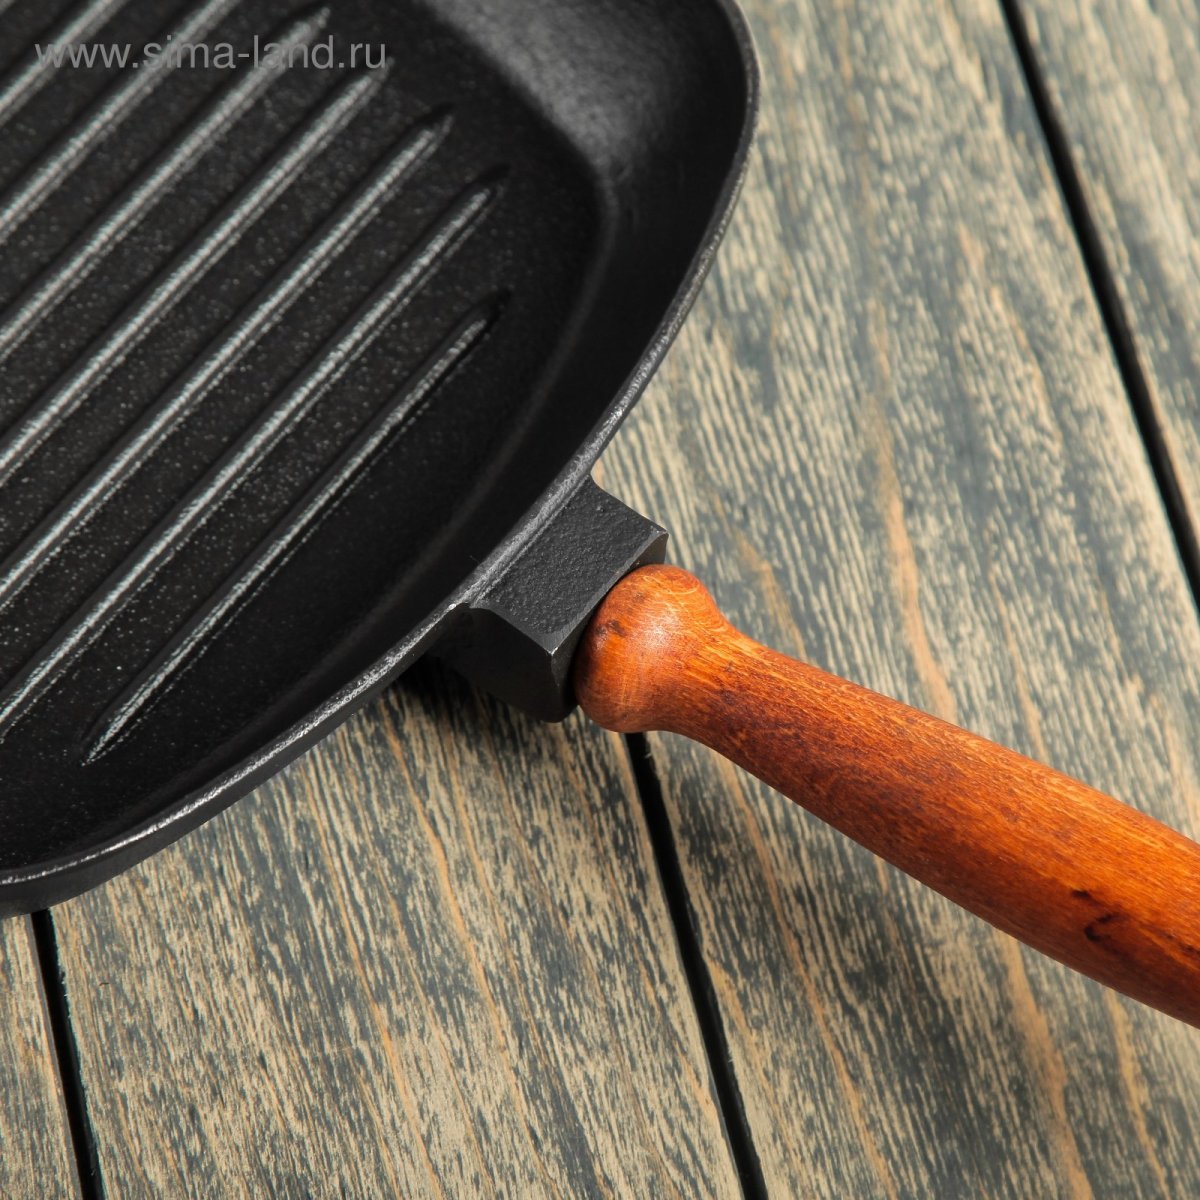 Чугунная сковорода 26. Сковородка с деревянной ручкой Huochu Fry Pan, d26 см. Сковорода квадратная гриль чугун. Сковорода гриль с деревянной ручкой. Сковорода гриль квадратная.